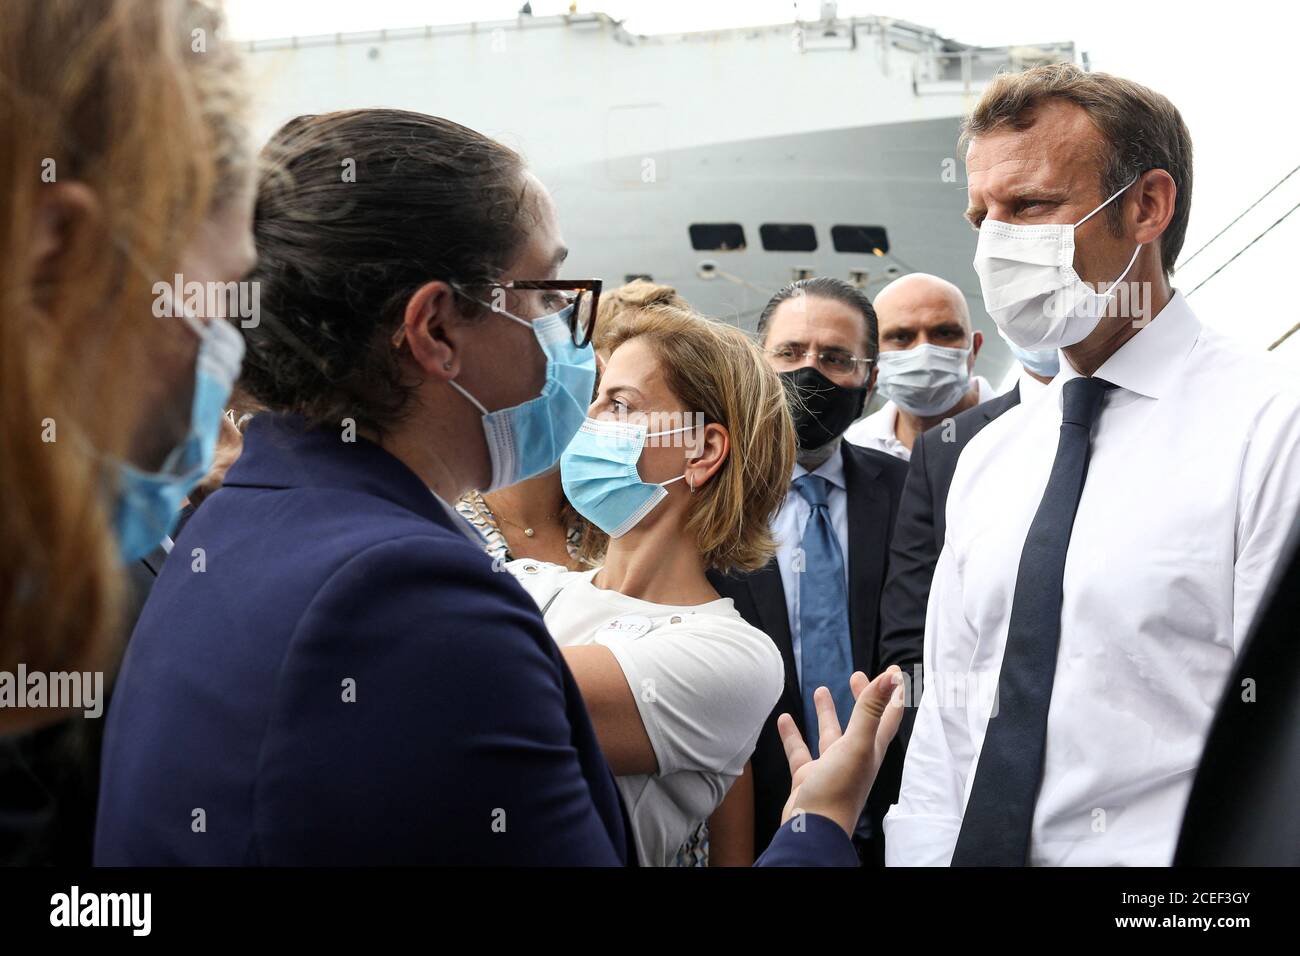 El presidente francés Emmanuel Macron se reúne con representantes de la ONU y ONG movilizadas para la reconstrucción del puerto de Beirut, en Beirut, Líbano, el 1 de septiembre de 2020. Stephane Lemouton/Pool vía REUTERS Foto de stock